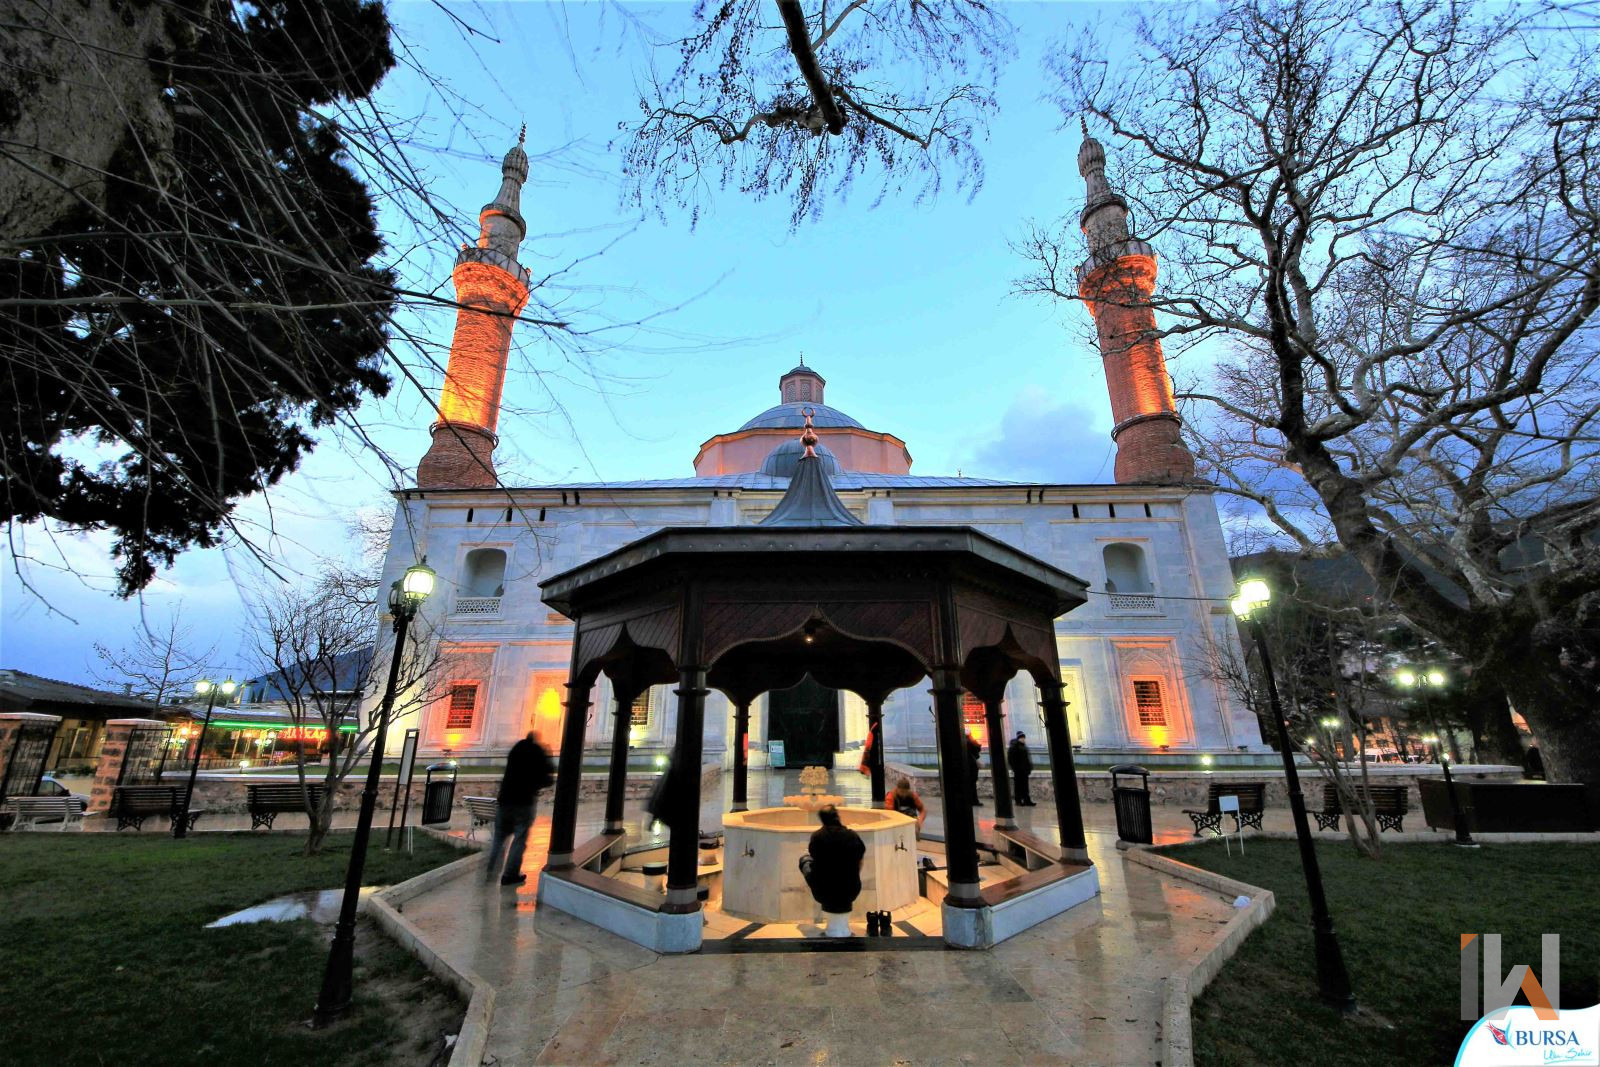 <h3>YEŞİL CAMİ</h3>Yeşil Cami, Sultan I. Mehmet tarafından 1419-1421 yılları arasında yaptırılan erken dönem Osmanlı mimarisinin bir örneğidir. Sadece bir cami değil, aynı zamanda büyük bir sosyal kompleksin parçasıdır. İçerisinde medrese, türbe, aşevi ve hamam gibi yapılar yer alır. Sultan I. Mehmed ve oğlu II. Murad, burada Yeşil Türbe denilen türbeye defnedilmiştir. Yeşil Cami, adını içi yeşil mürekkeple boyanmış çinilerden almıştır. Bu önemli yapı, UNESCO'nun Dünya Mirası Listesi'nde de yer almaktadır.